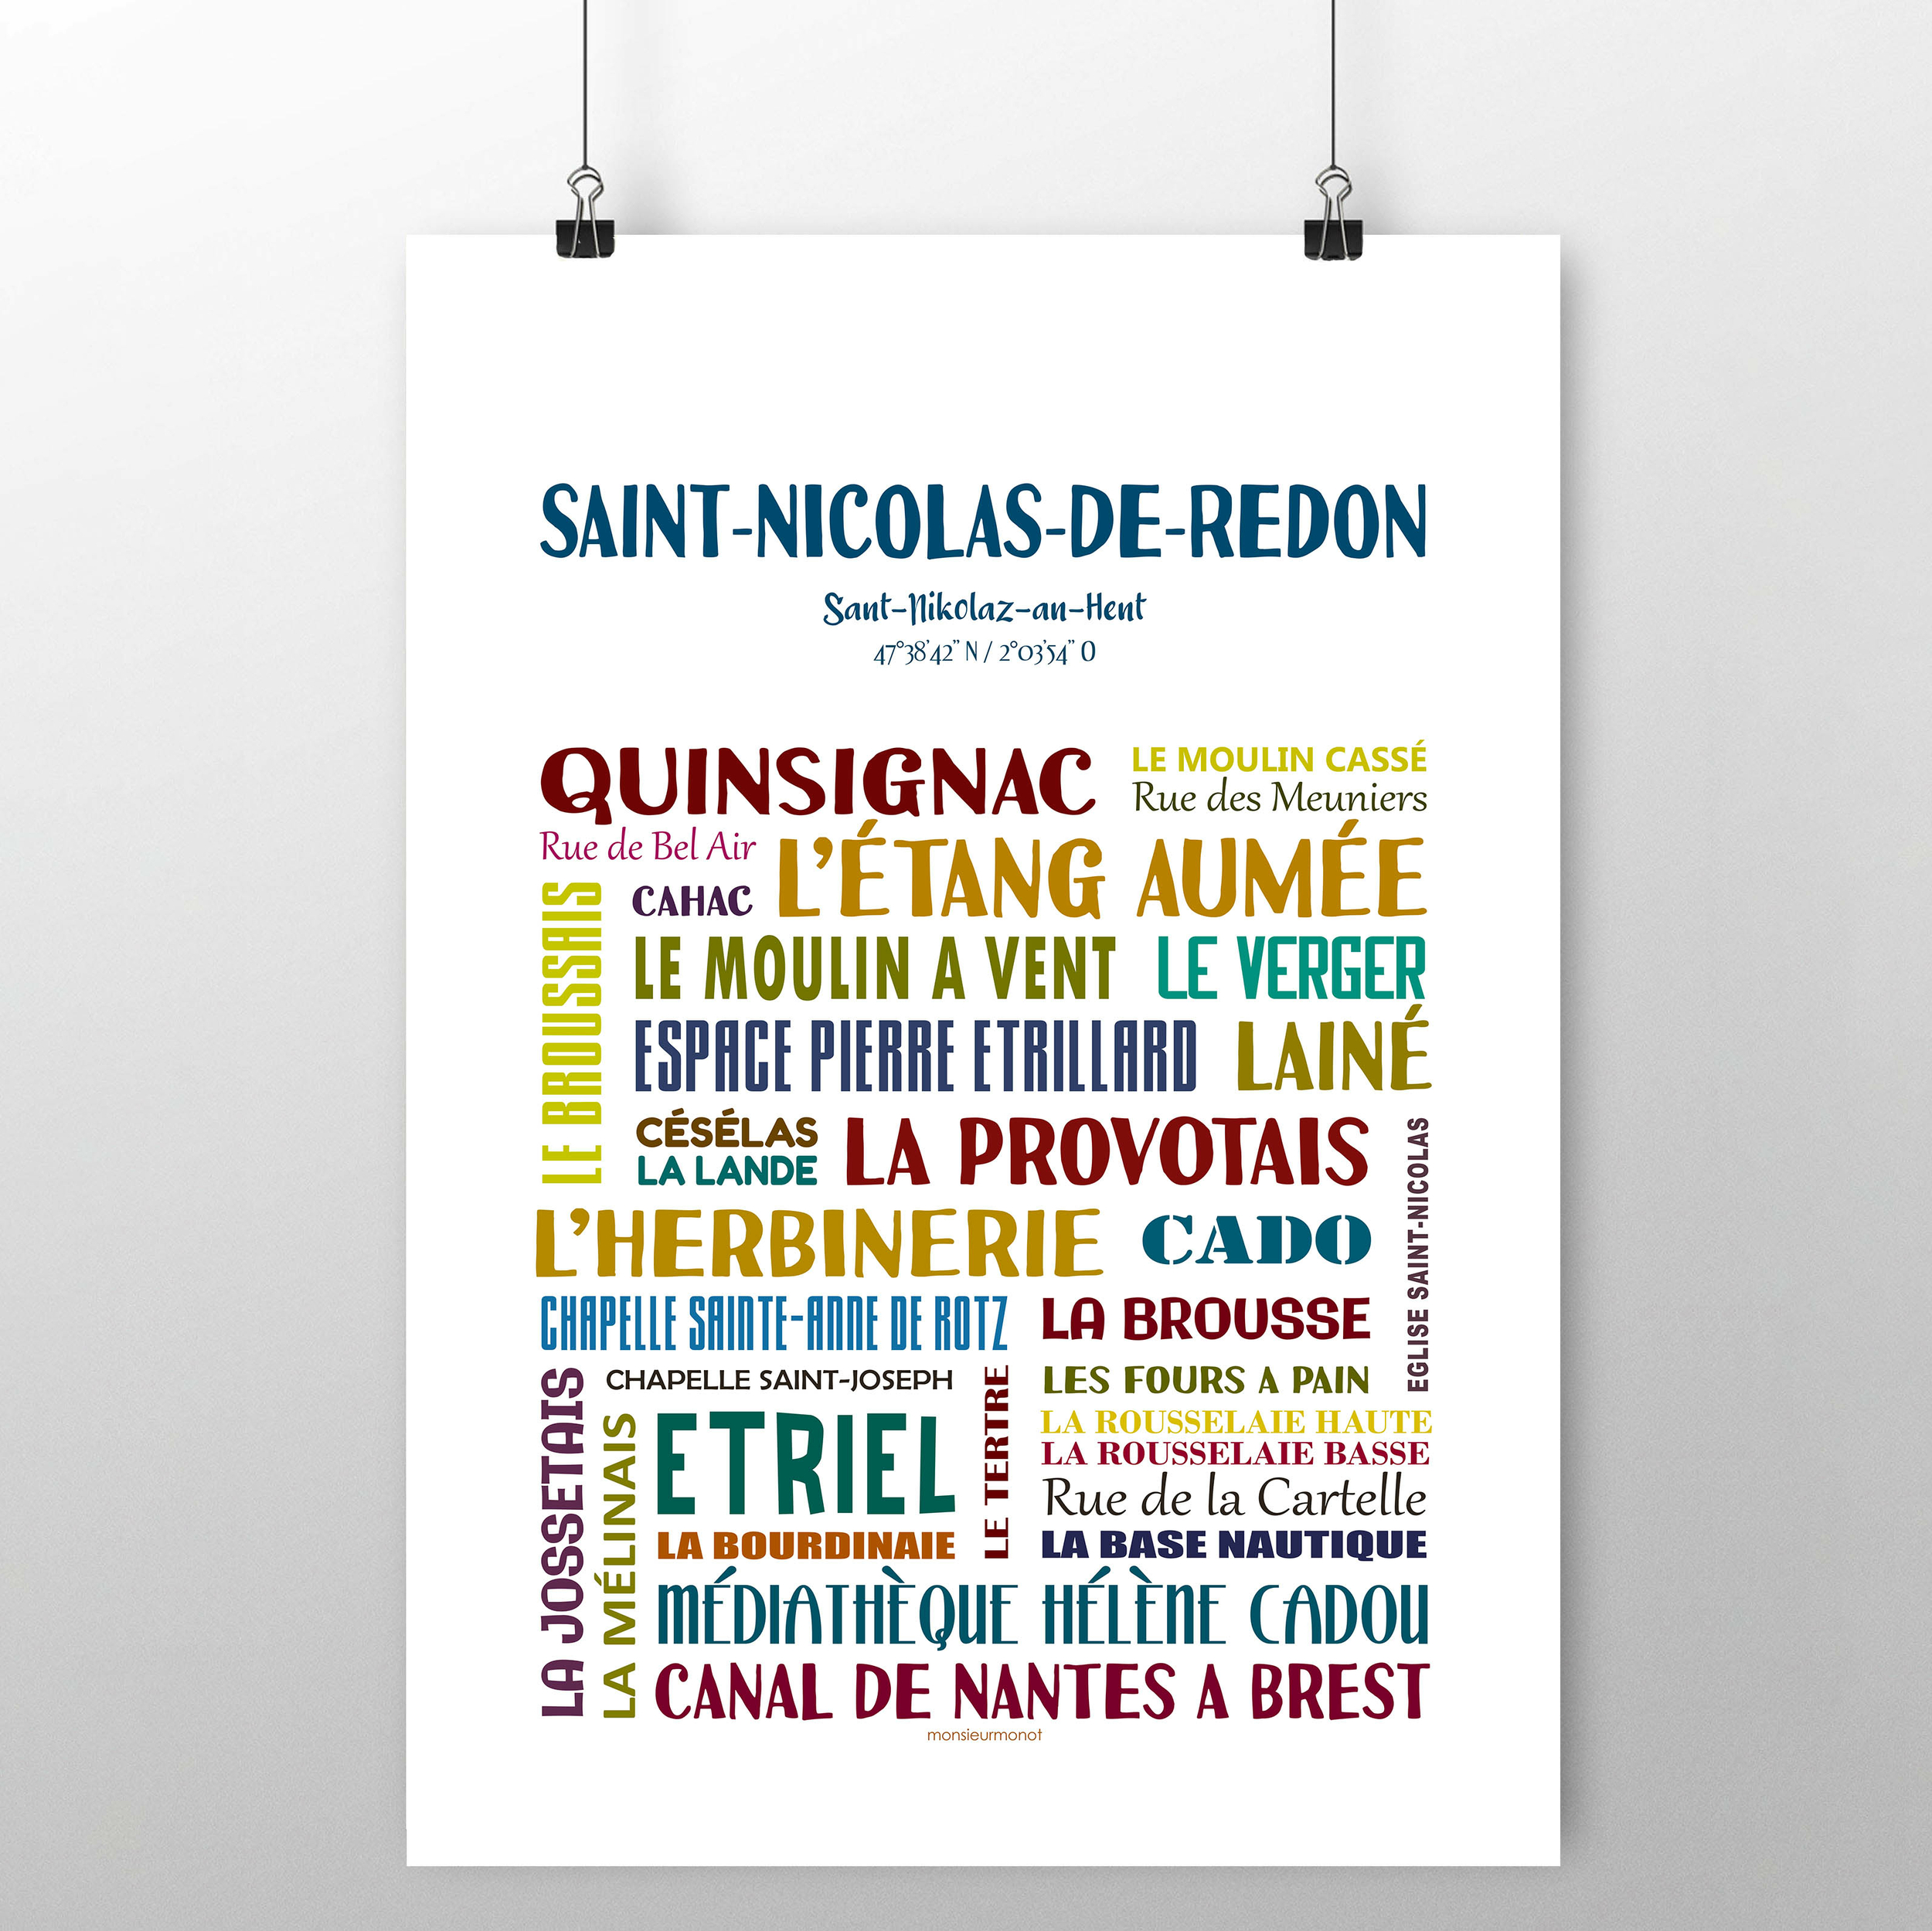 Saint nicolas de redon 2